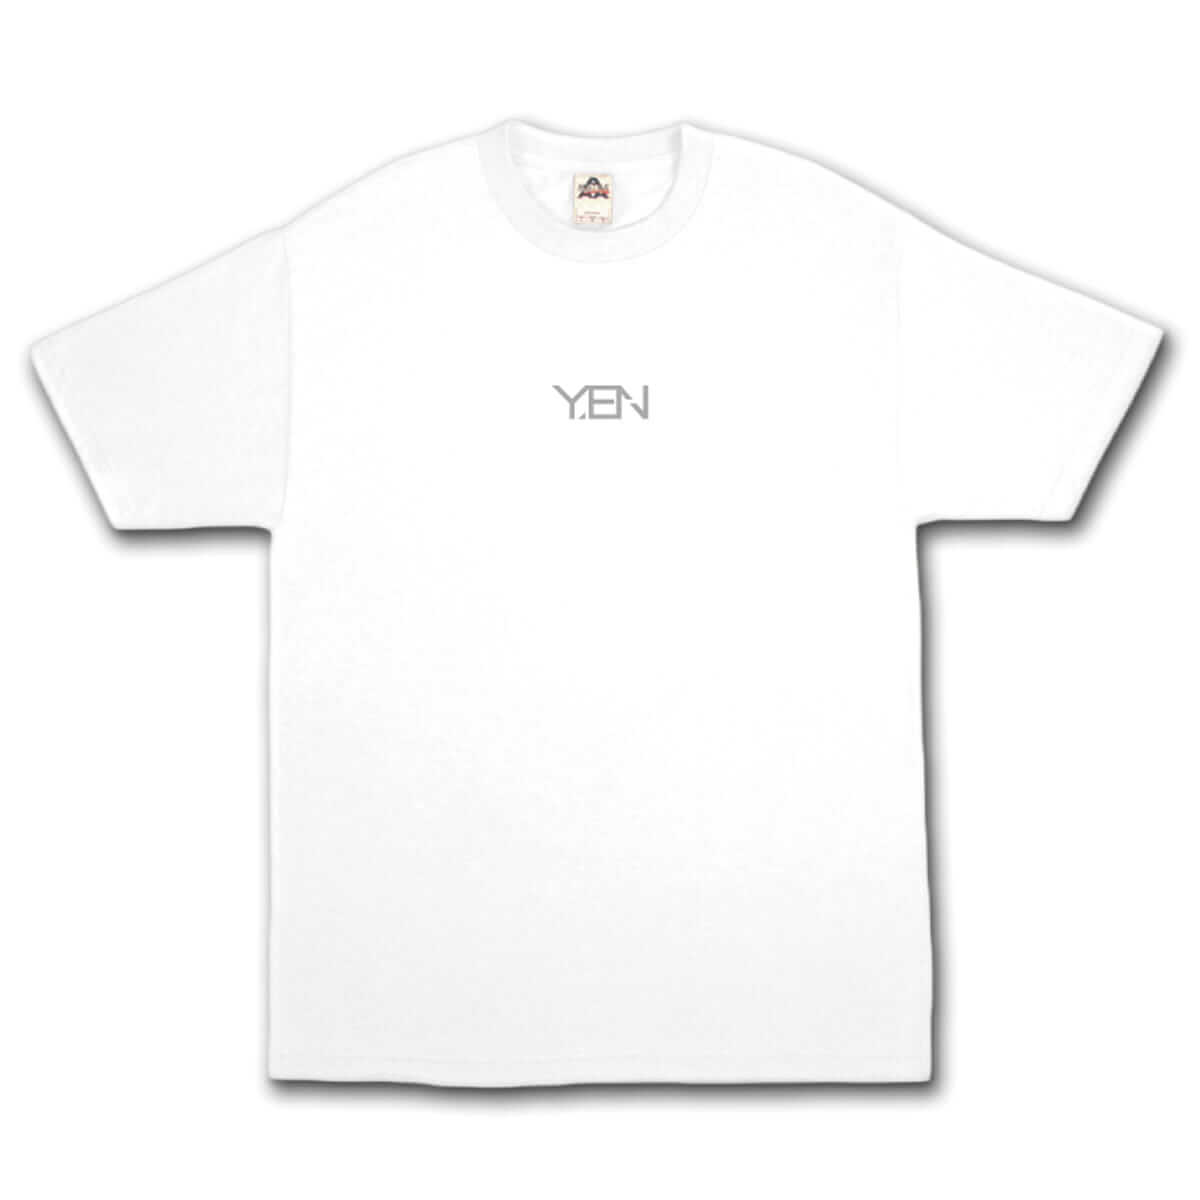 YENTOWNが大集合するイベント「YENJAMIN」の会場限定Tシャツのデザインが公開｜kzm『DIMENSION』とAwichの新曲のリリパに music180714-yanjamin-6-1200x1200